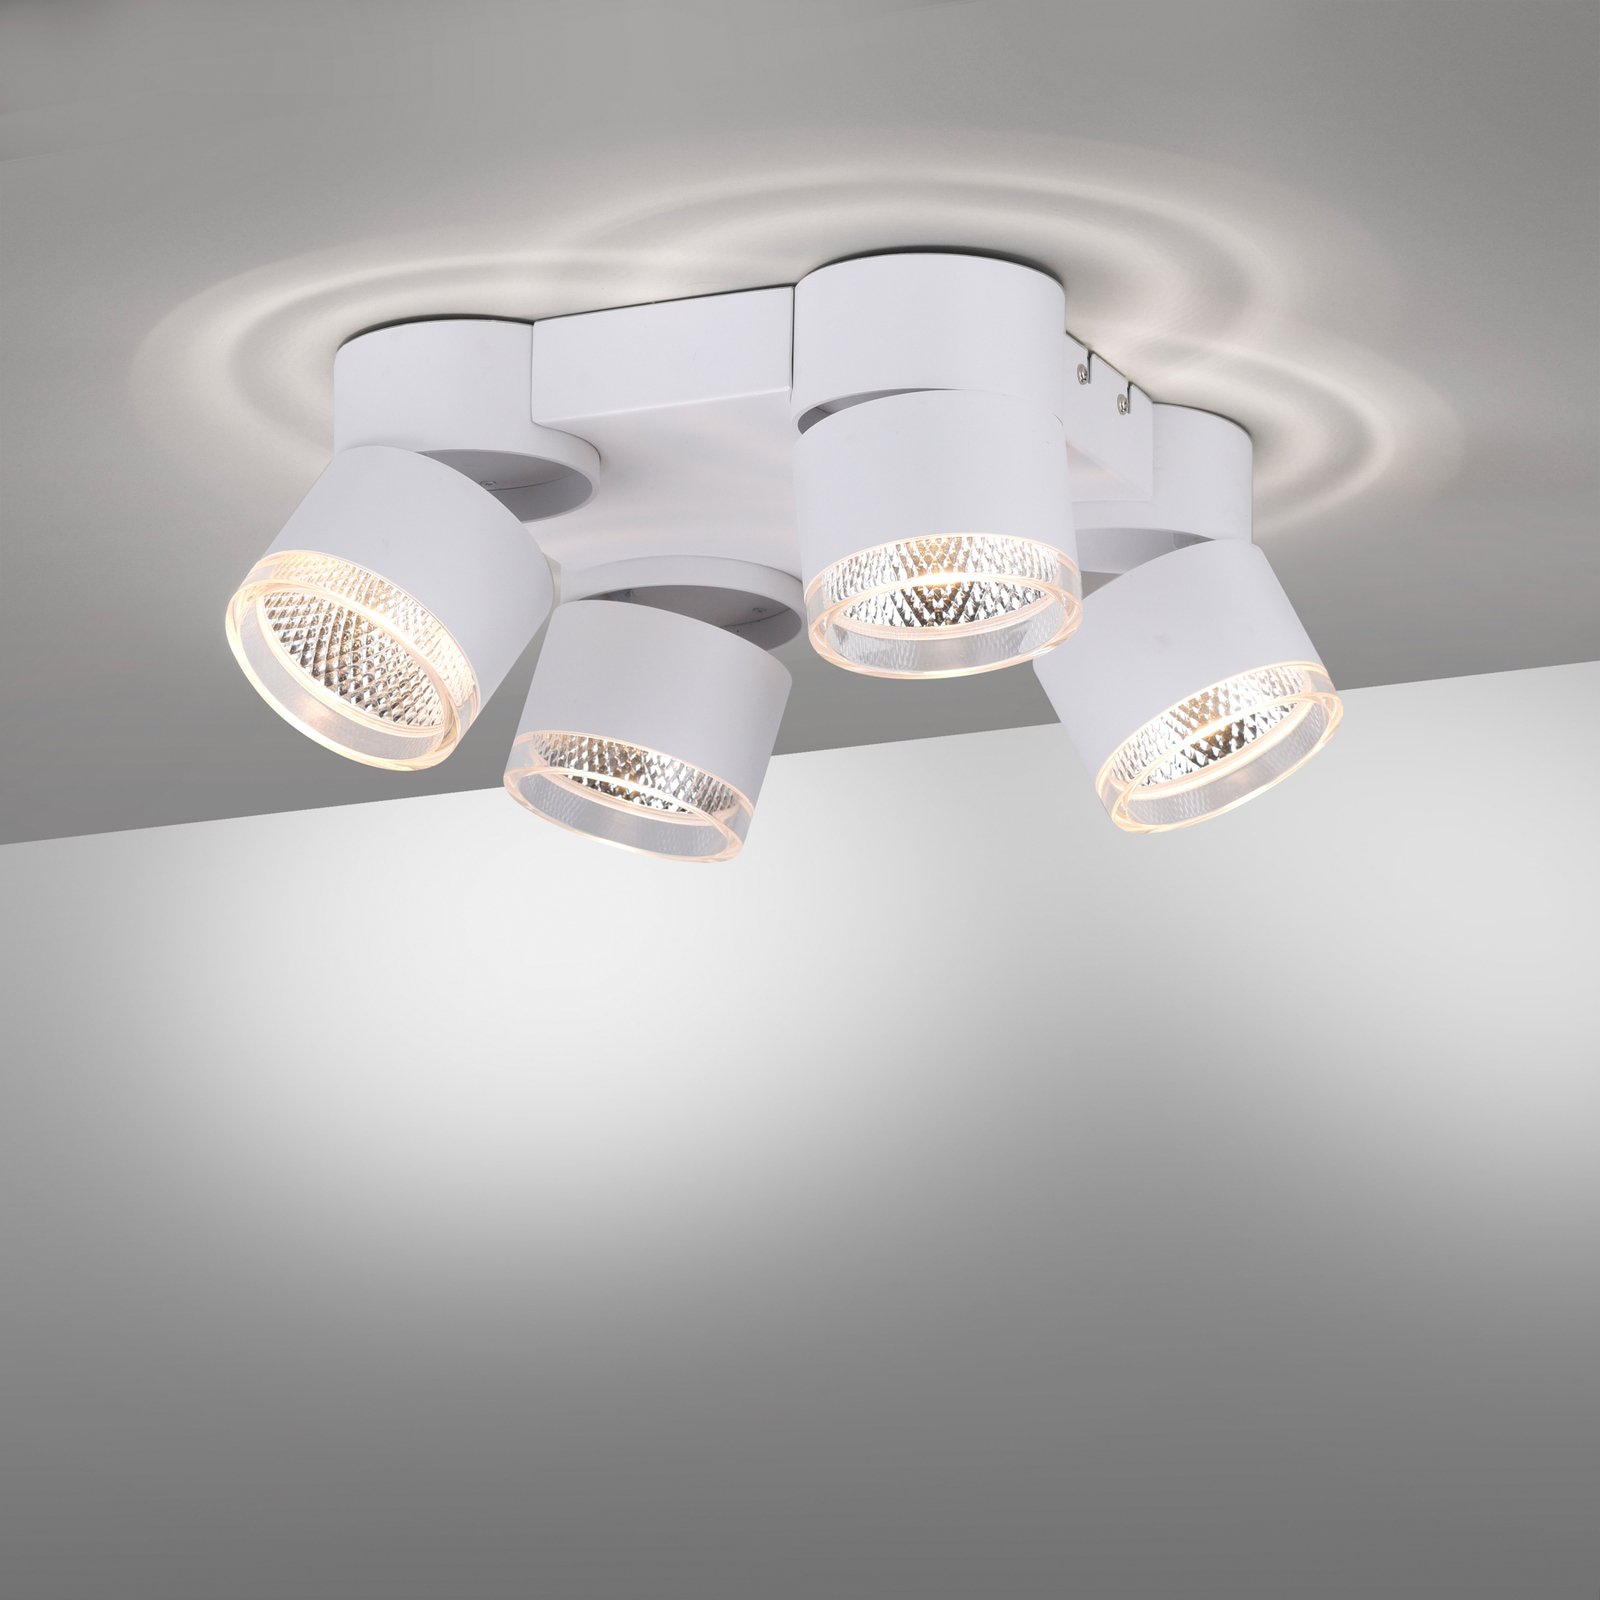 PURE Nola LED lubinis šviestuvas, keturių lempučių, baltos spalvos